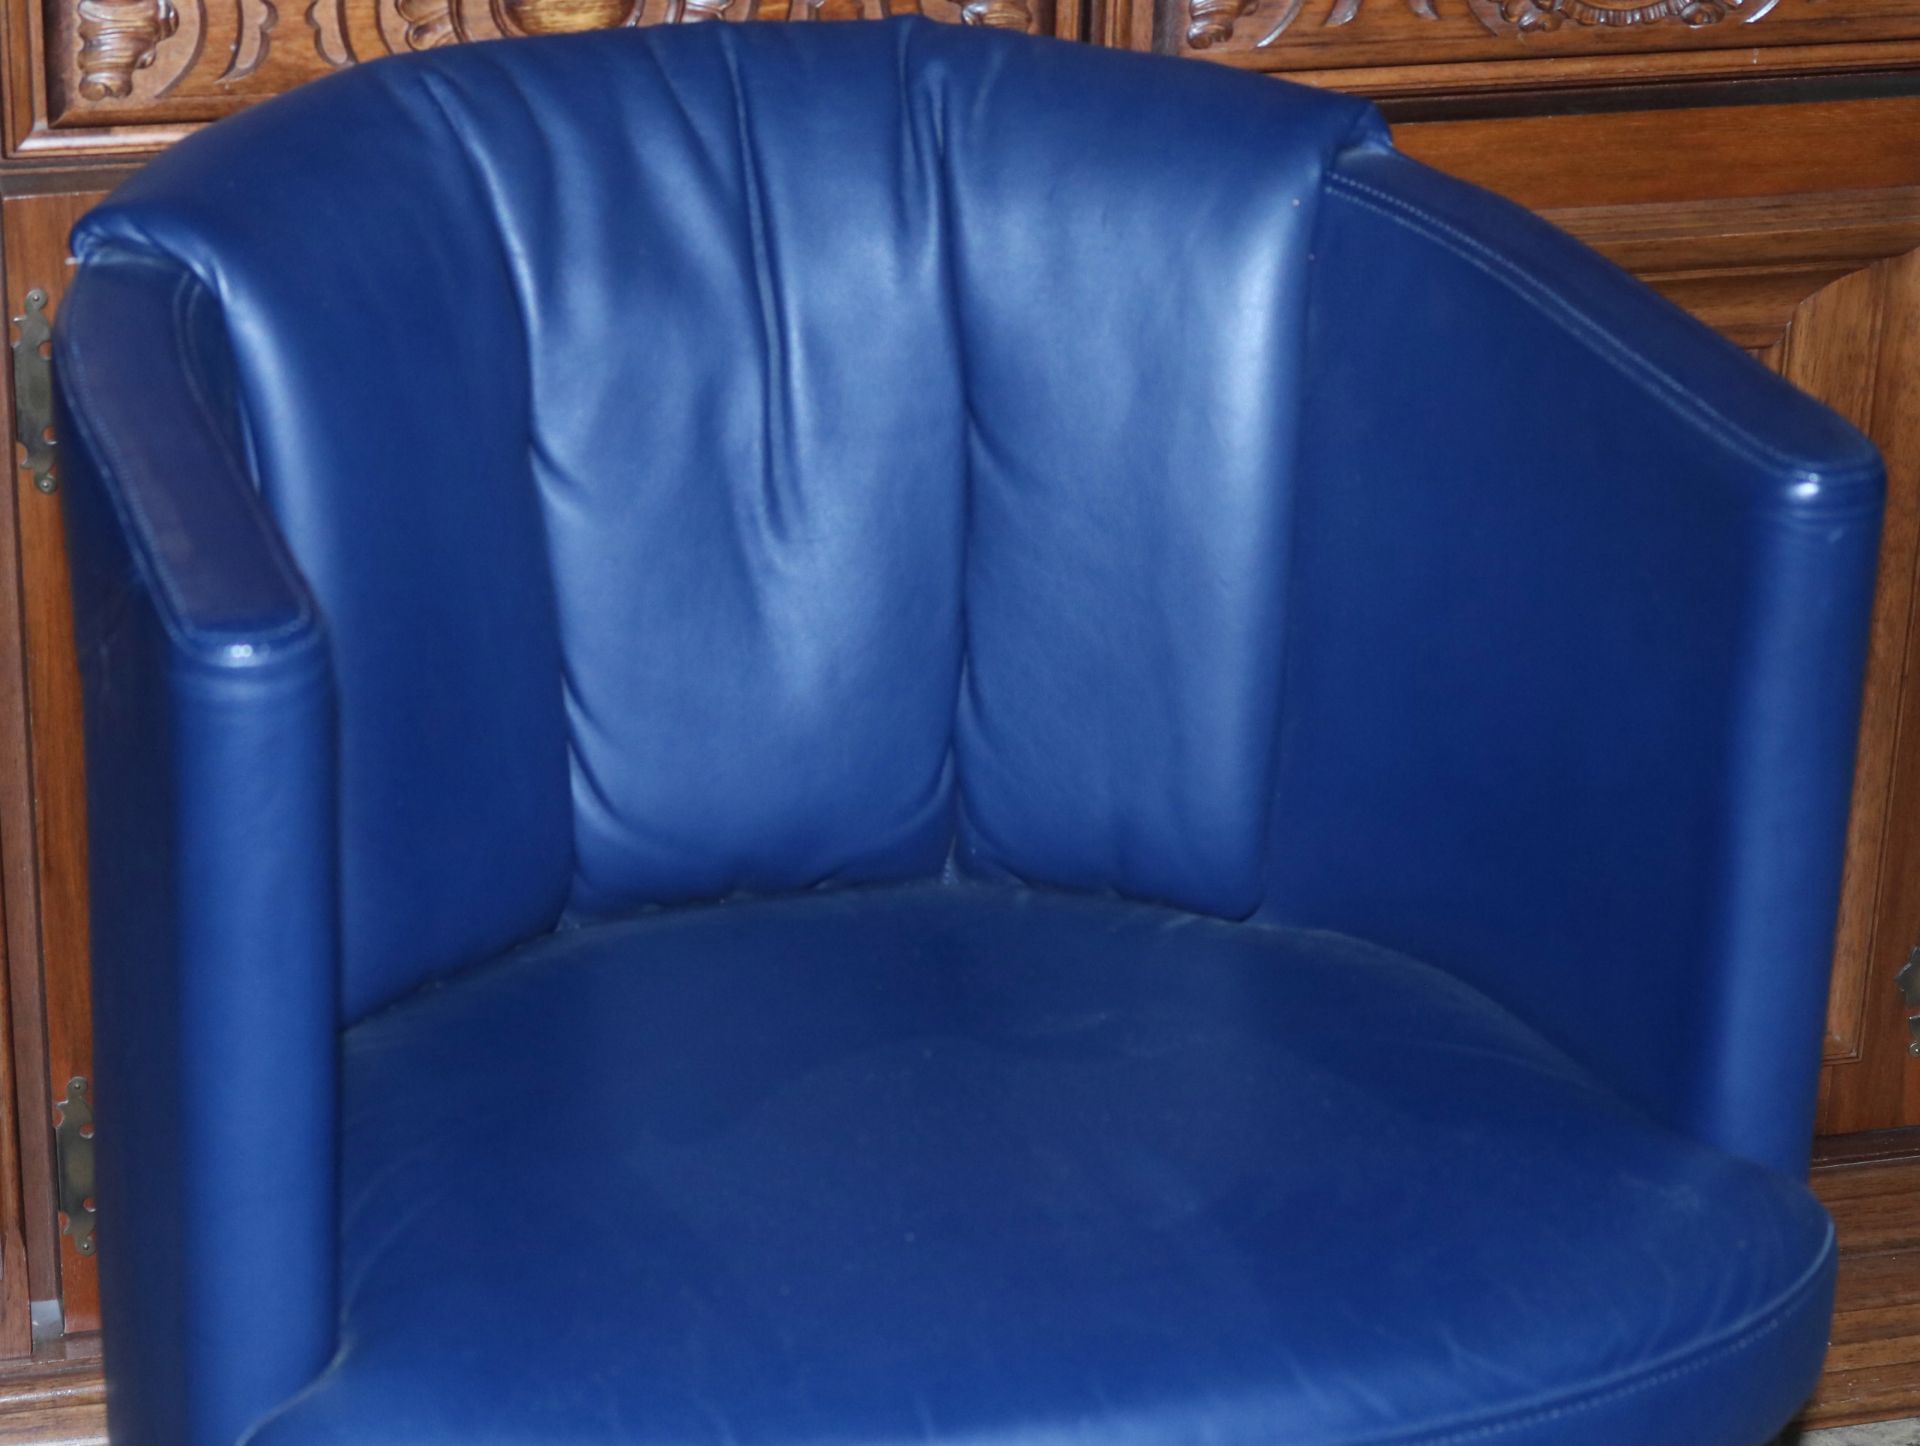 Design-Sessel, Leder dunkelblau, H: 47 cm, 2. H. 20. Jh. - Image 2 of 2